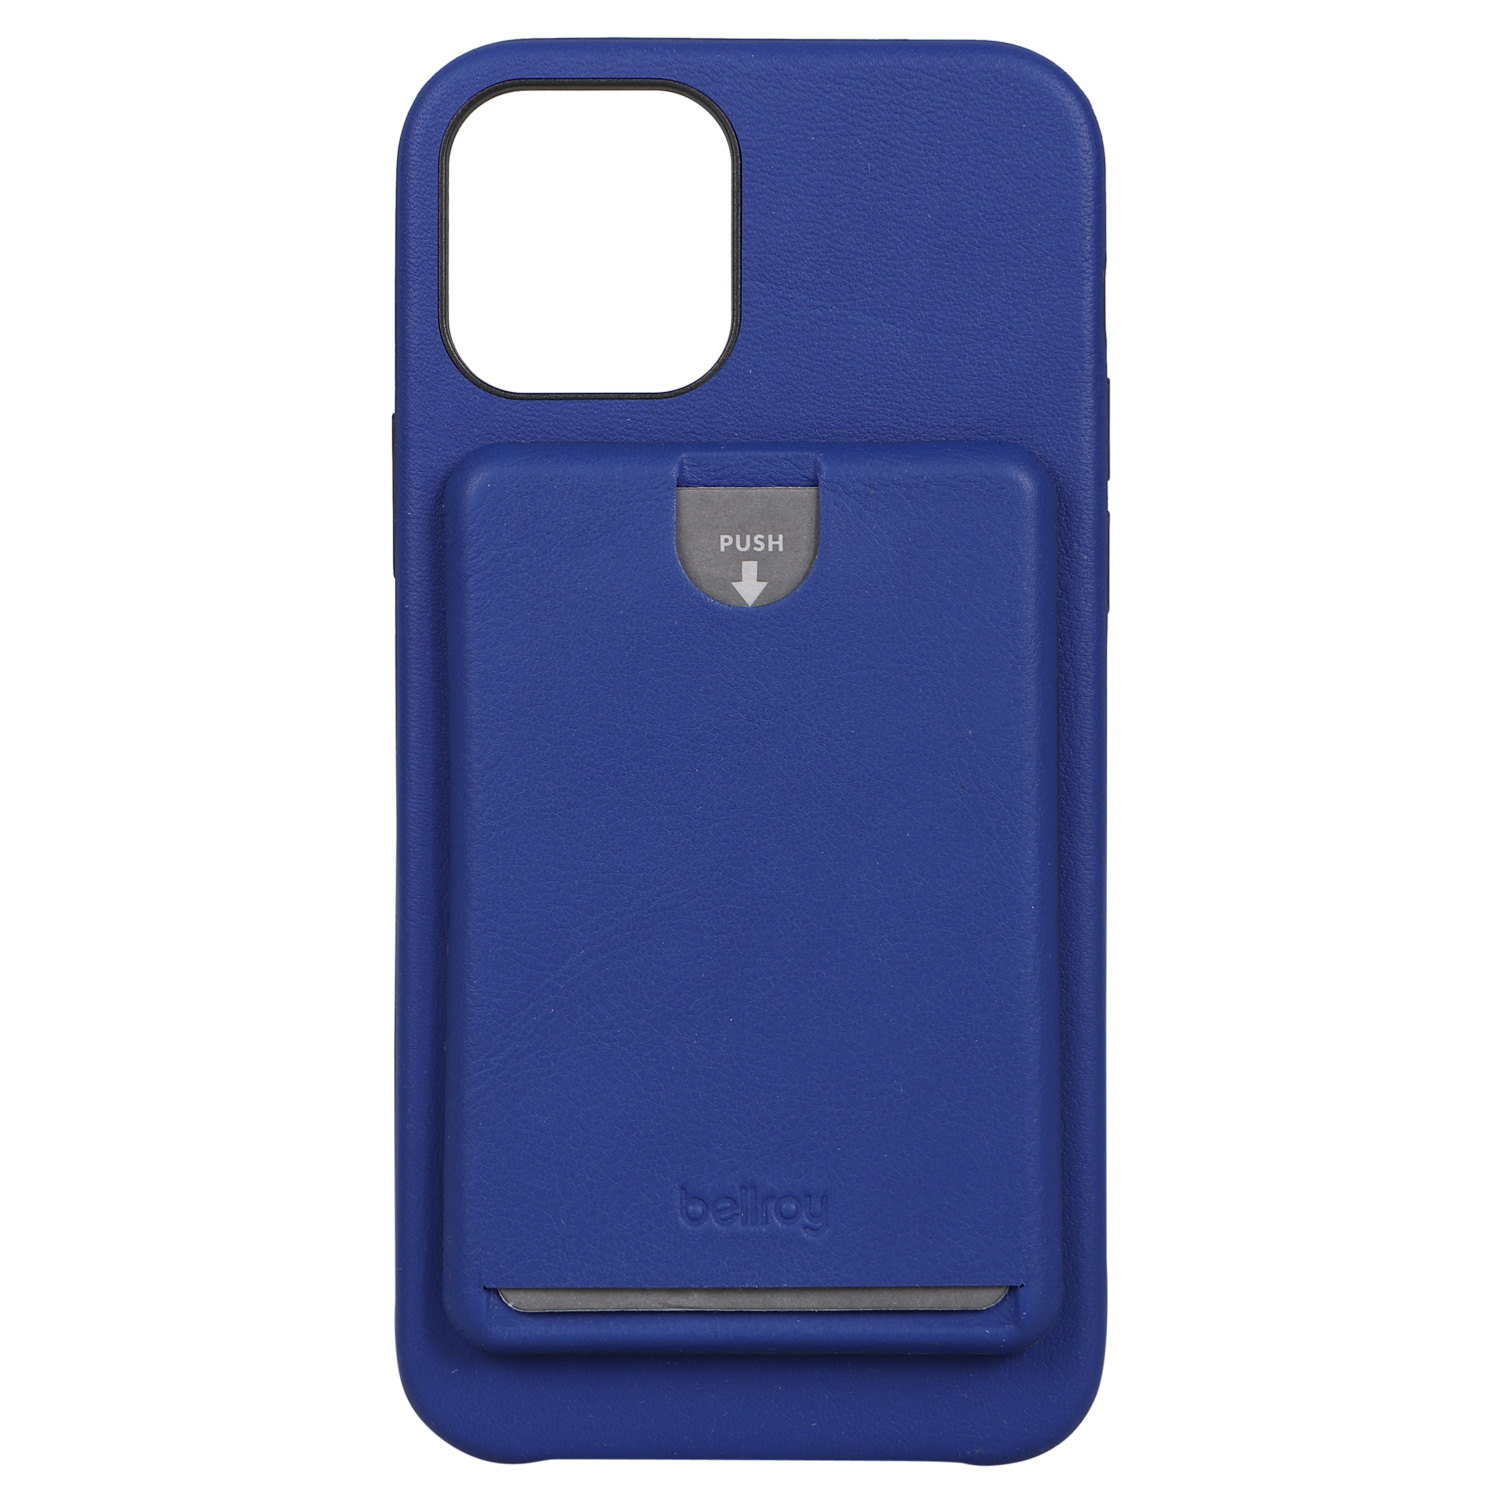 ベルロイ Bellroy iPhone12 12 Pro ケース スマホ 携帯 アイフォン メンズ レディース 背面ポケット PHONE CASE  ブラック グレー ブラウン 黒 PMXA